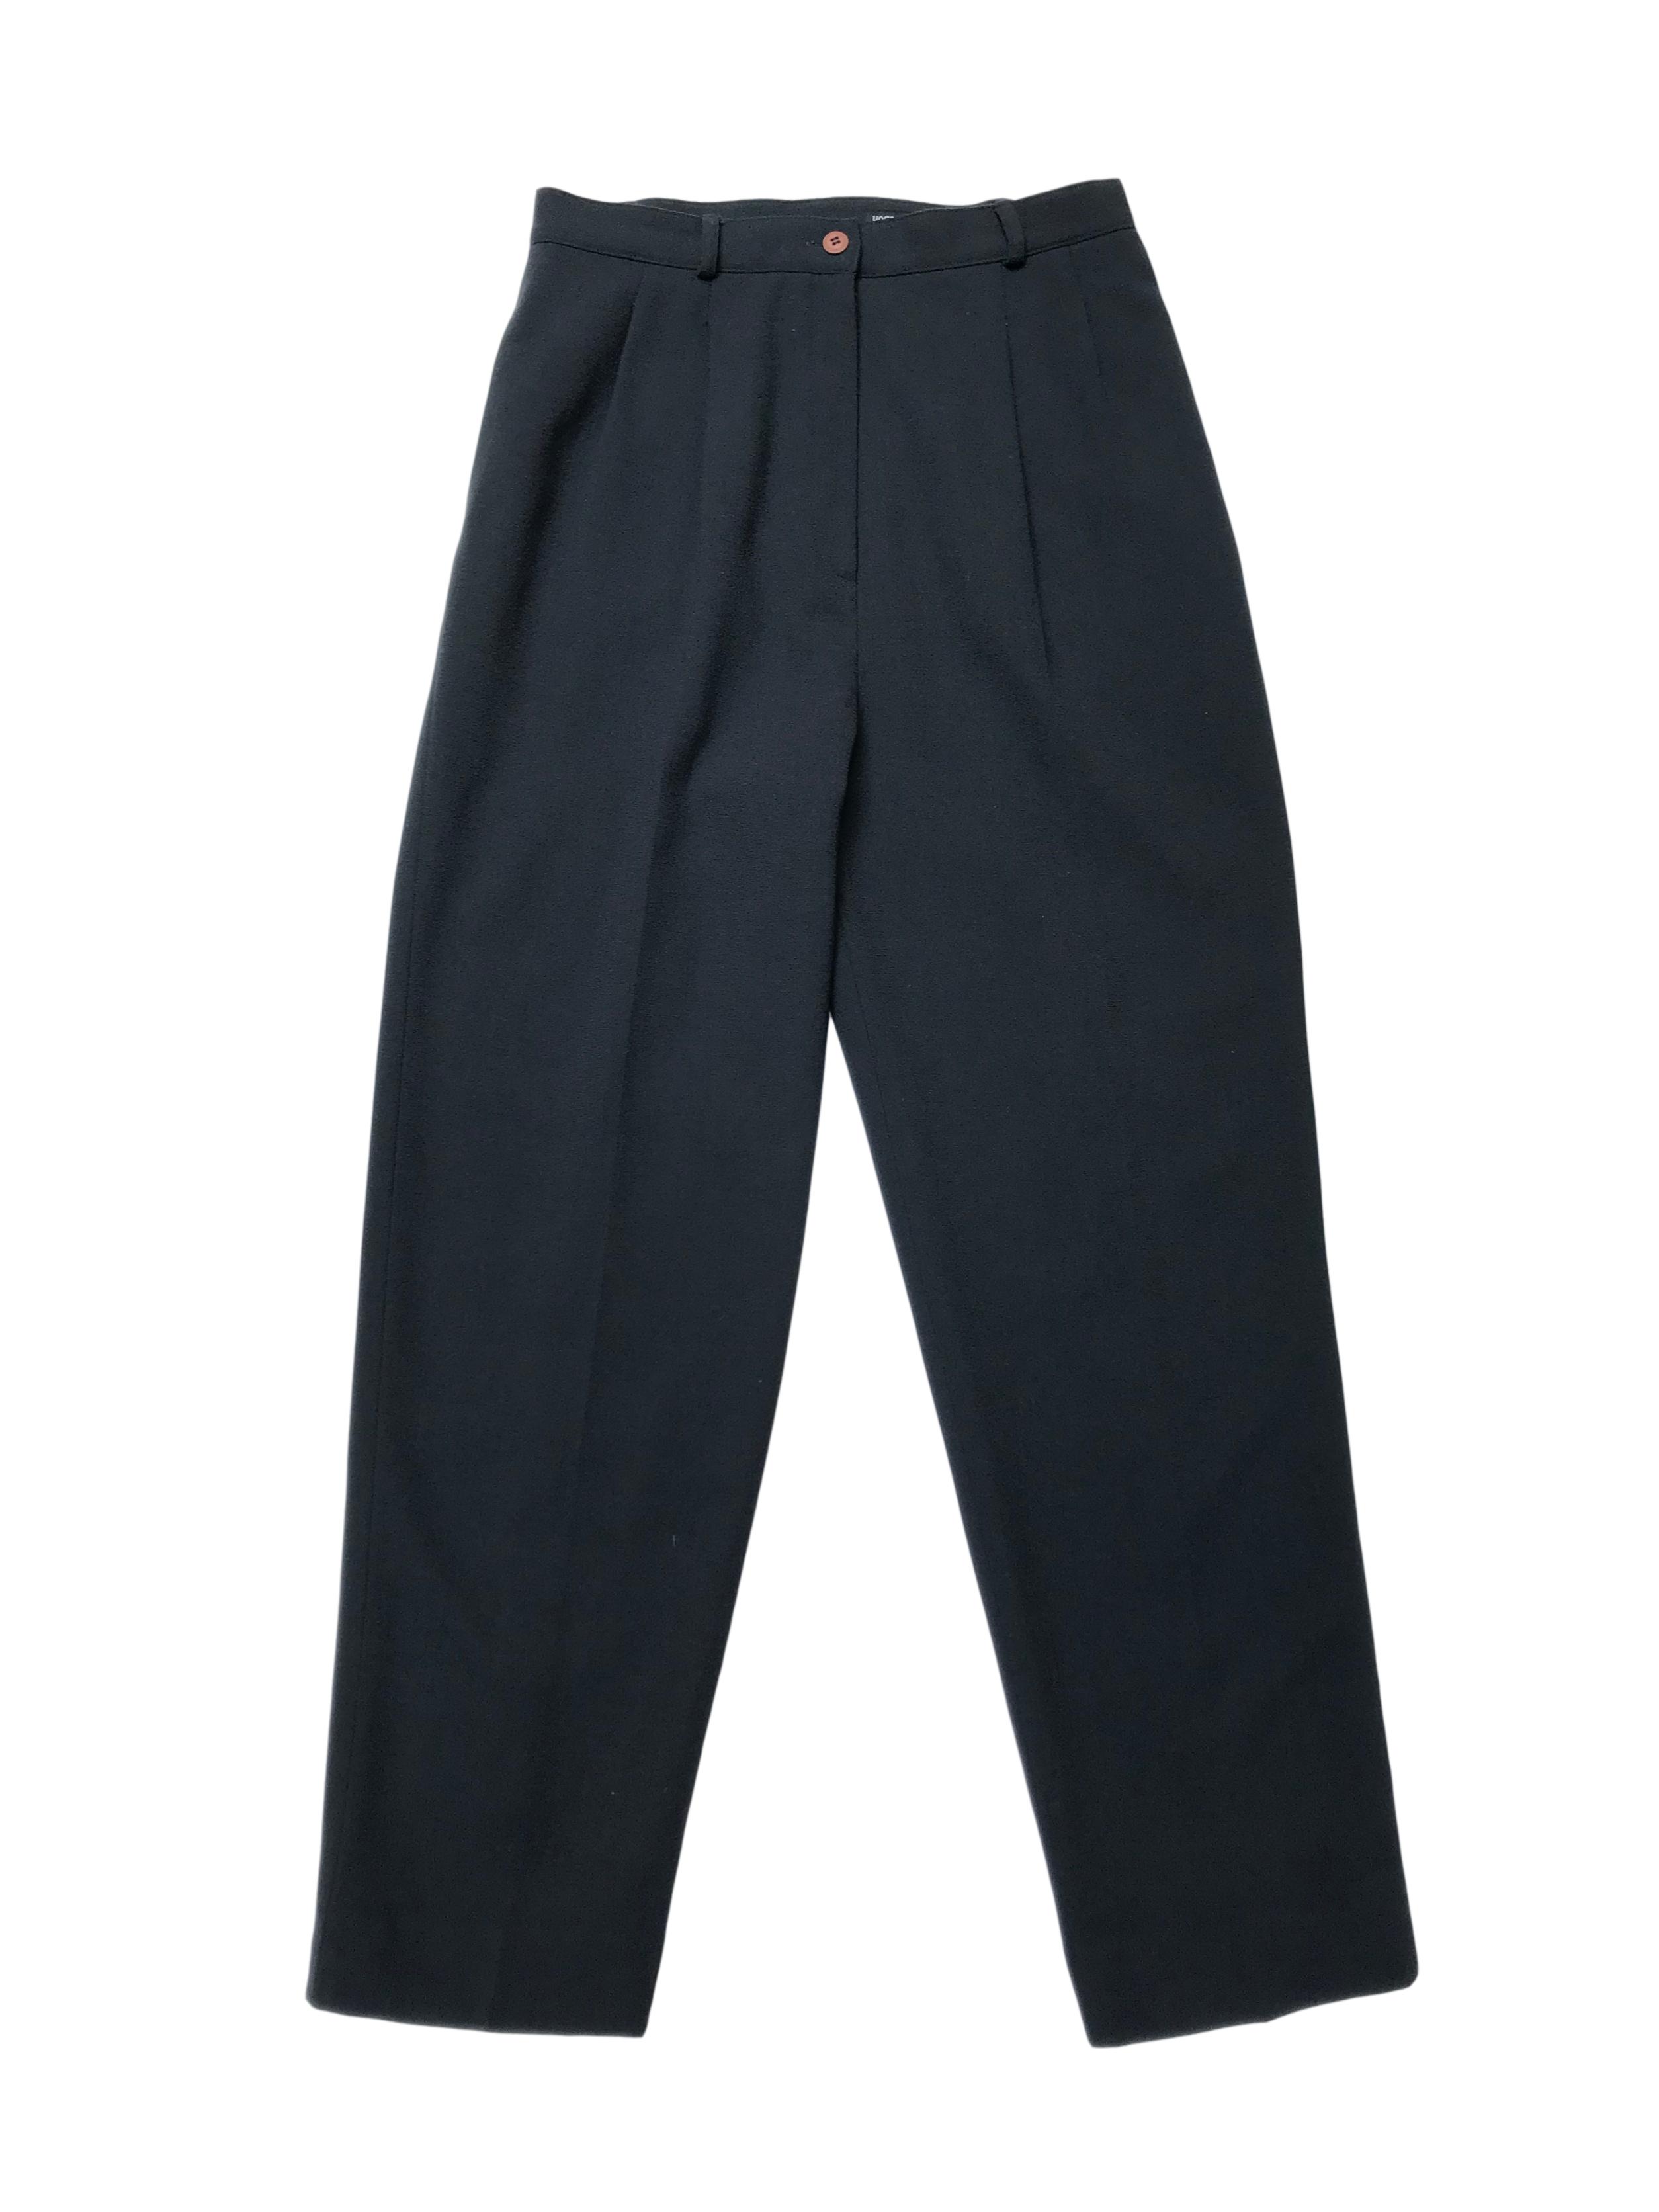 Pantalón vintage Kasper a la cintura, corte recto con pinzas, bolsillos laterales, forrado, 98% lana verde. Cintura 74cm 